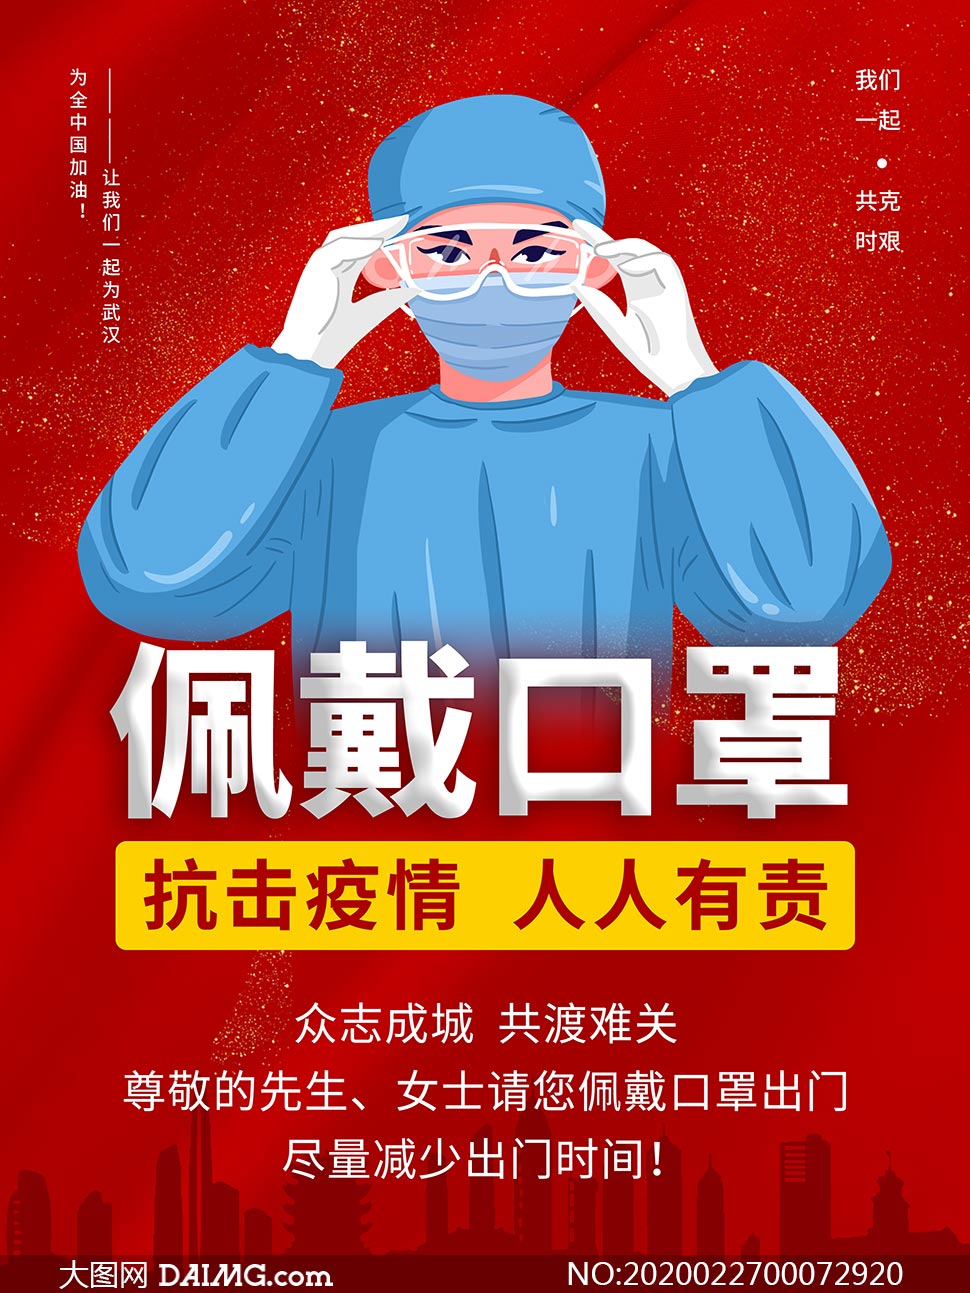 疫情海报背景戴口罩图片